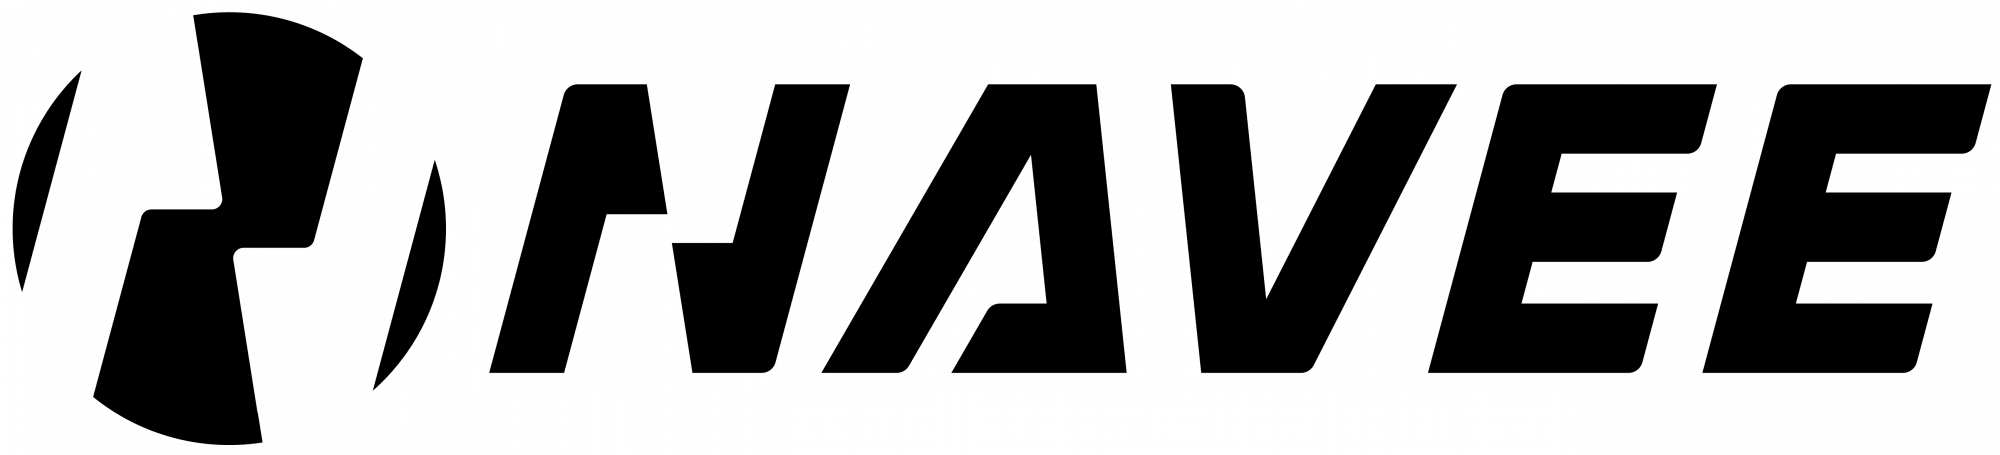 Navee – логотип, купить товары Navee в Минске с доставкой по Беларуси – 360shop.by